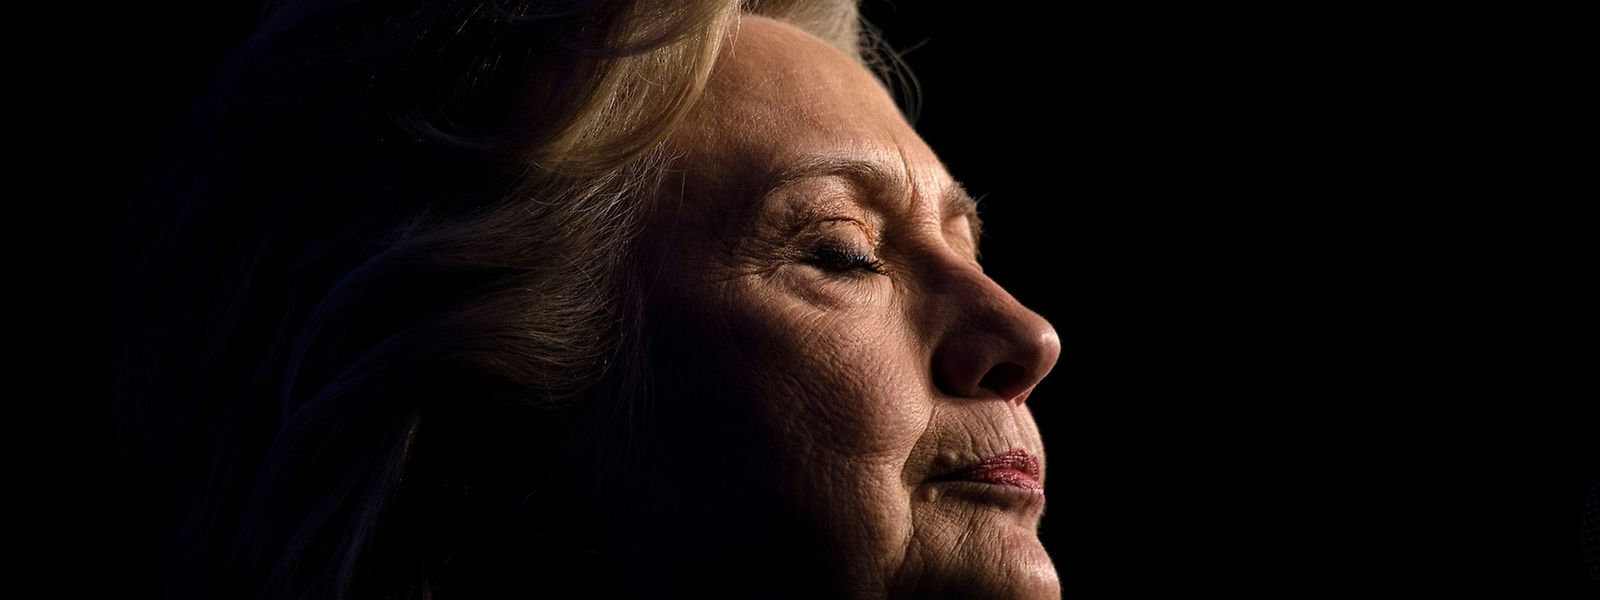 Der Vorsprung bringt ihr nichts - Hillary Clinton muss sich mit der Niederlage abfinden.